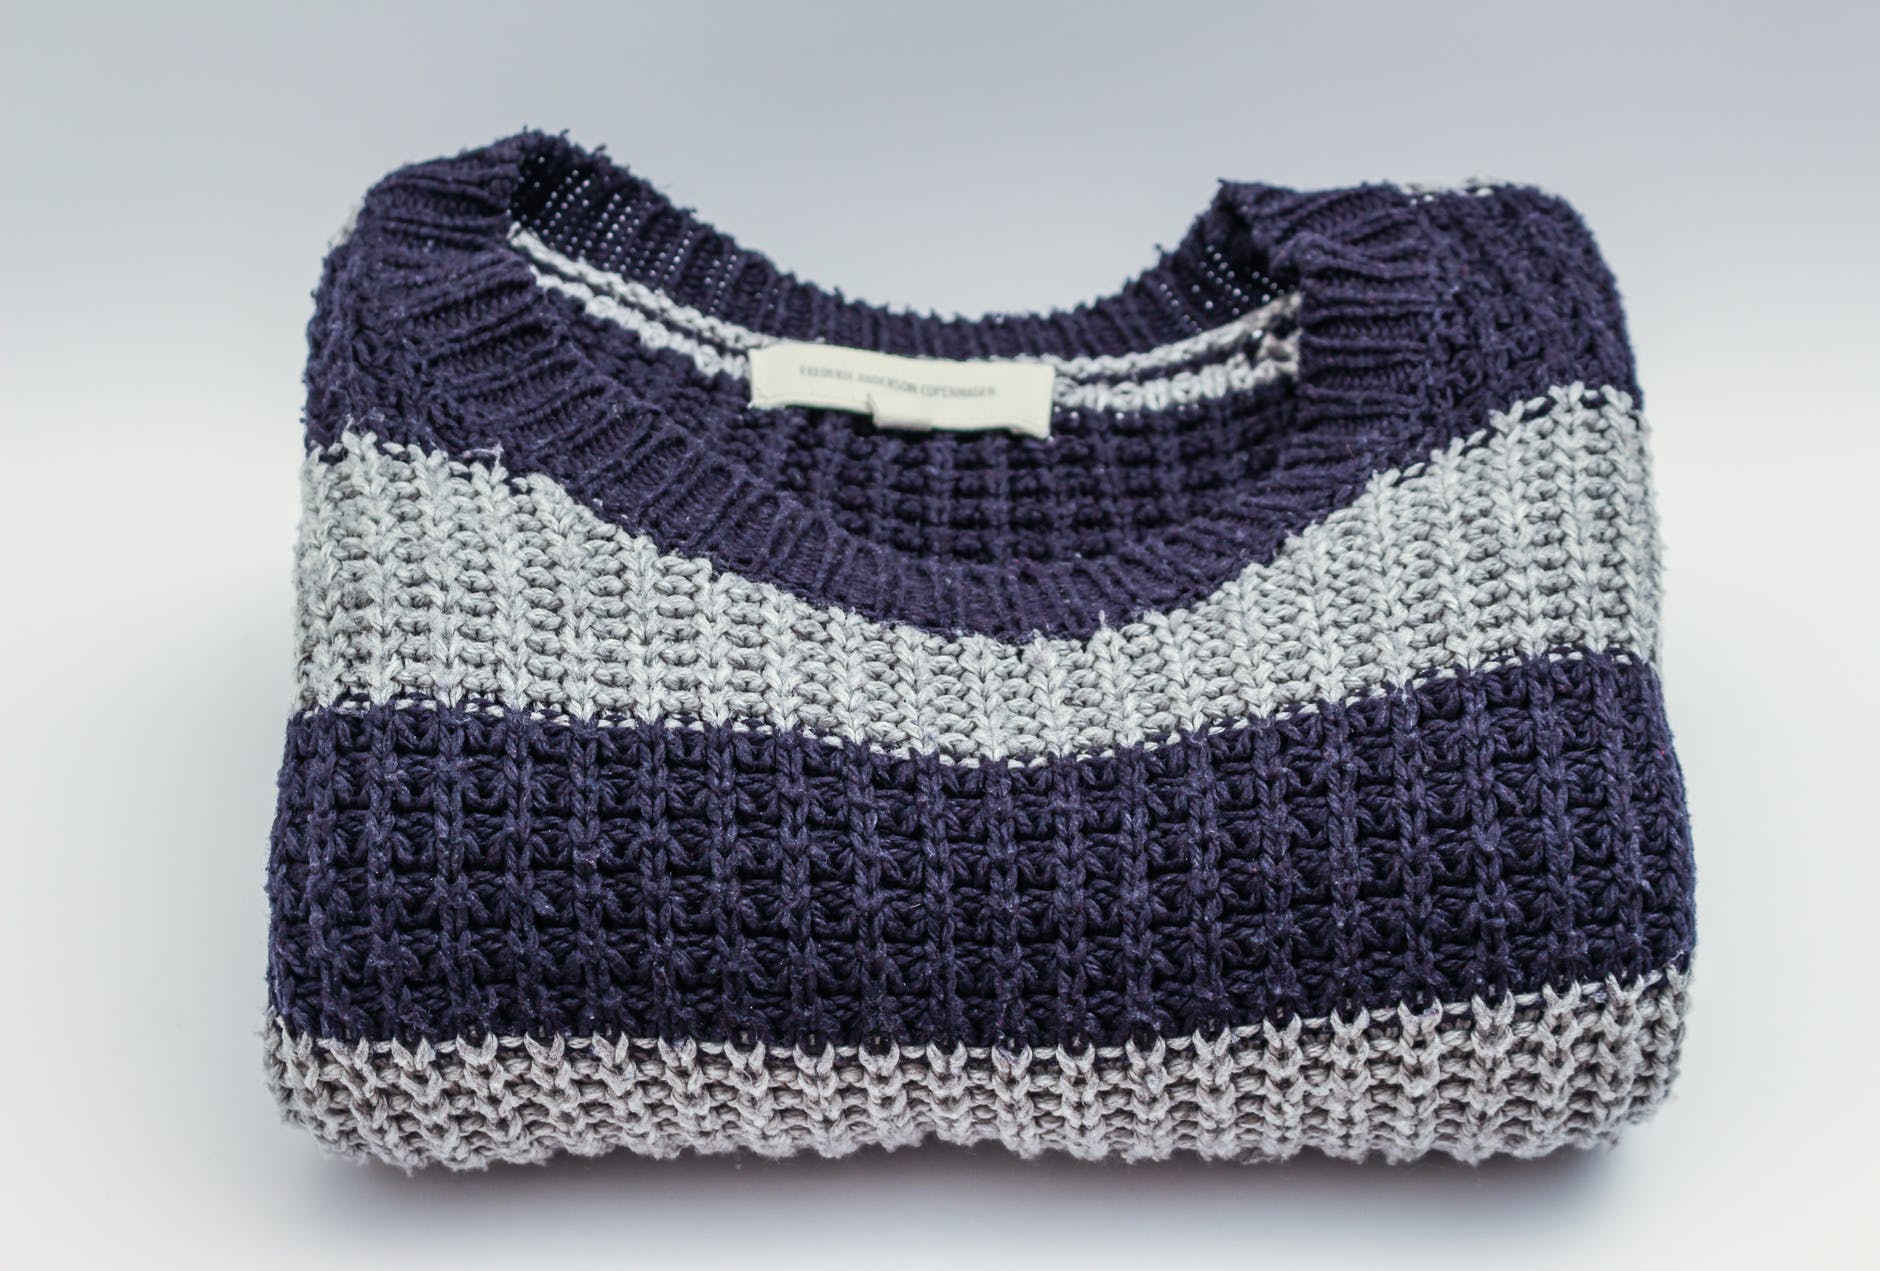 Woolen,Wool,Purple,Clothing,Blue,Knitting,Woven fabric,Crochet,Outerwear,Pattern